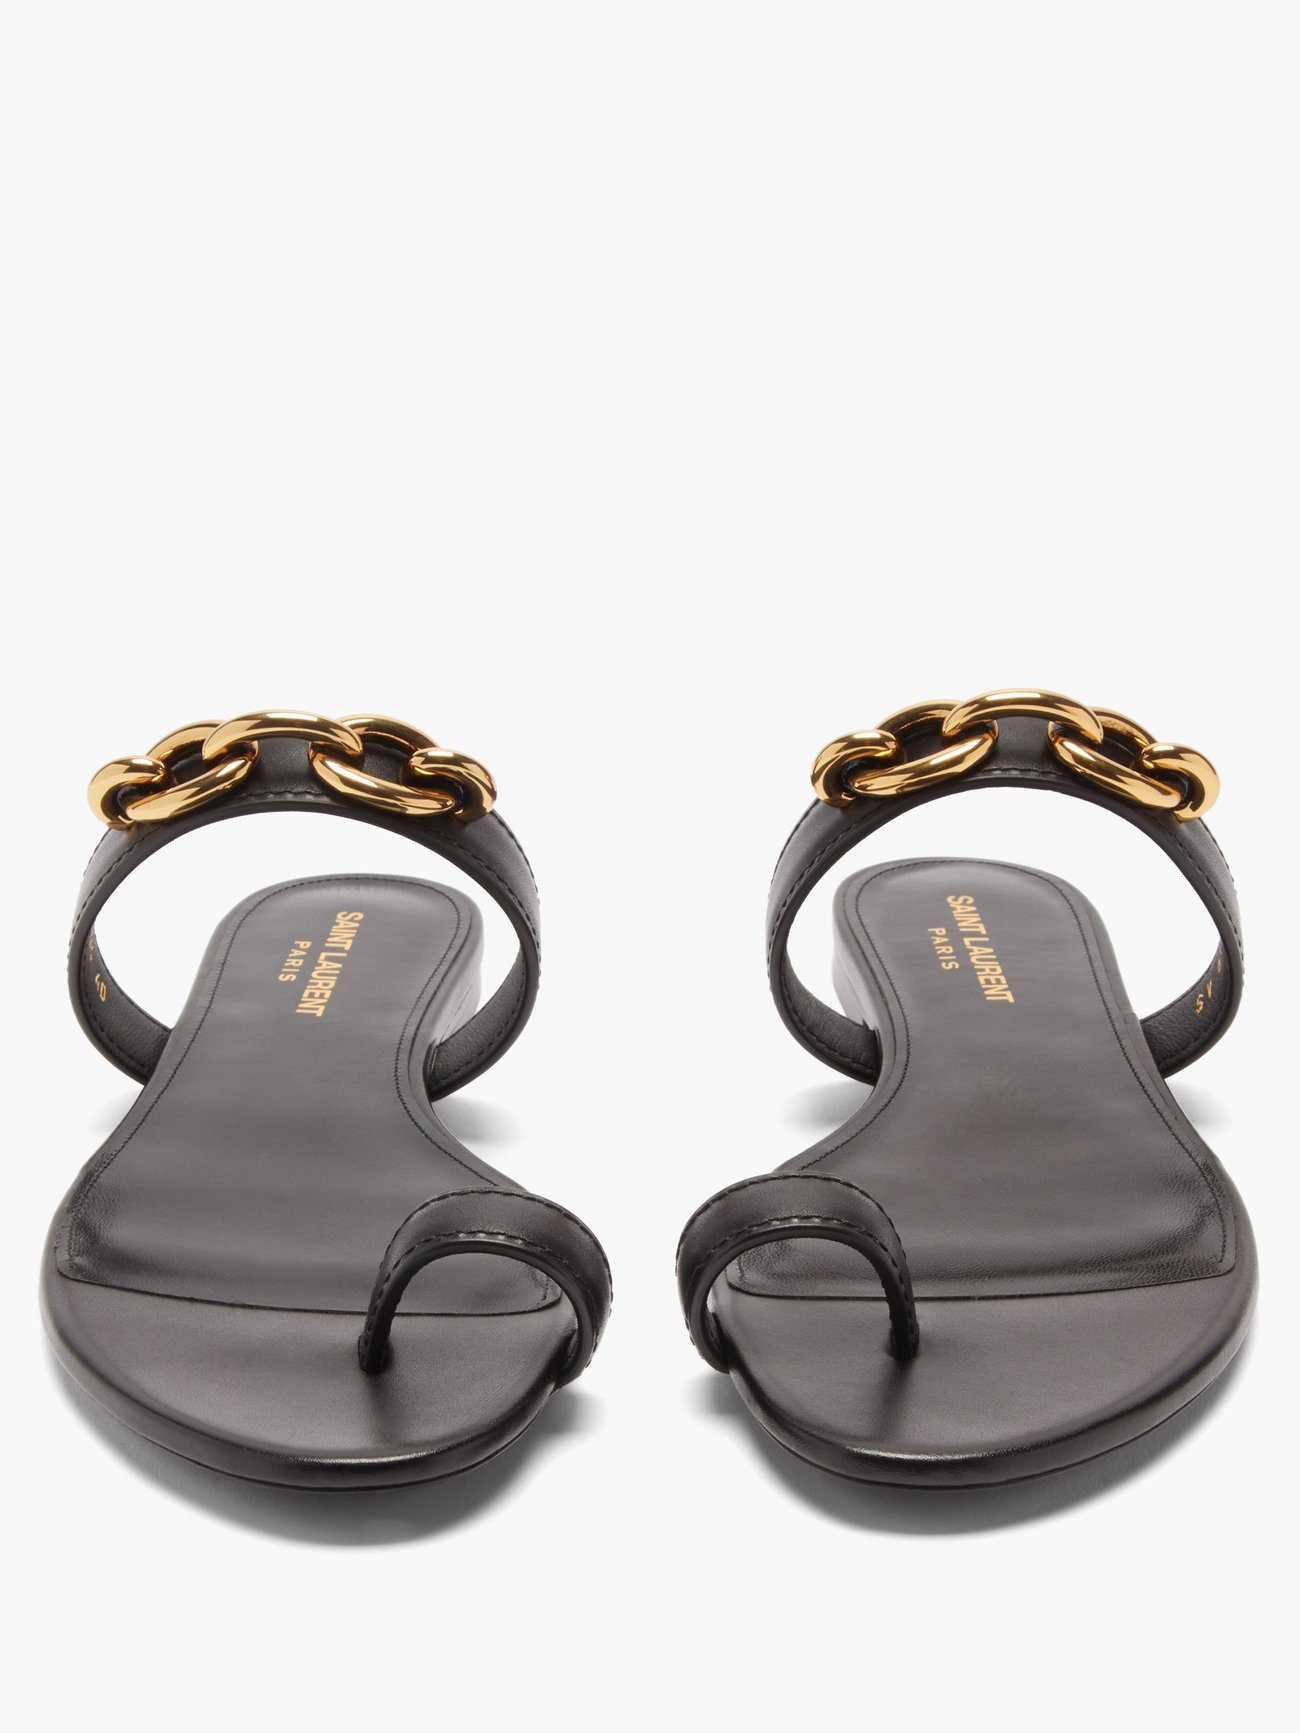 Louis Vuitton / Sandals / Platform Sandals Chain / Samurai Line / 40 Black  Leather ref.483722 - Joli Closet